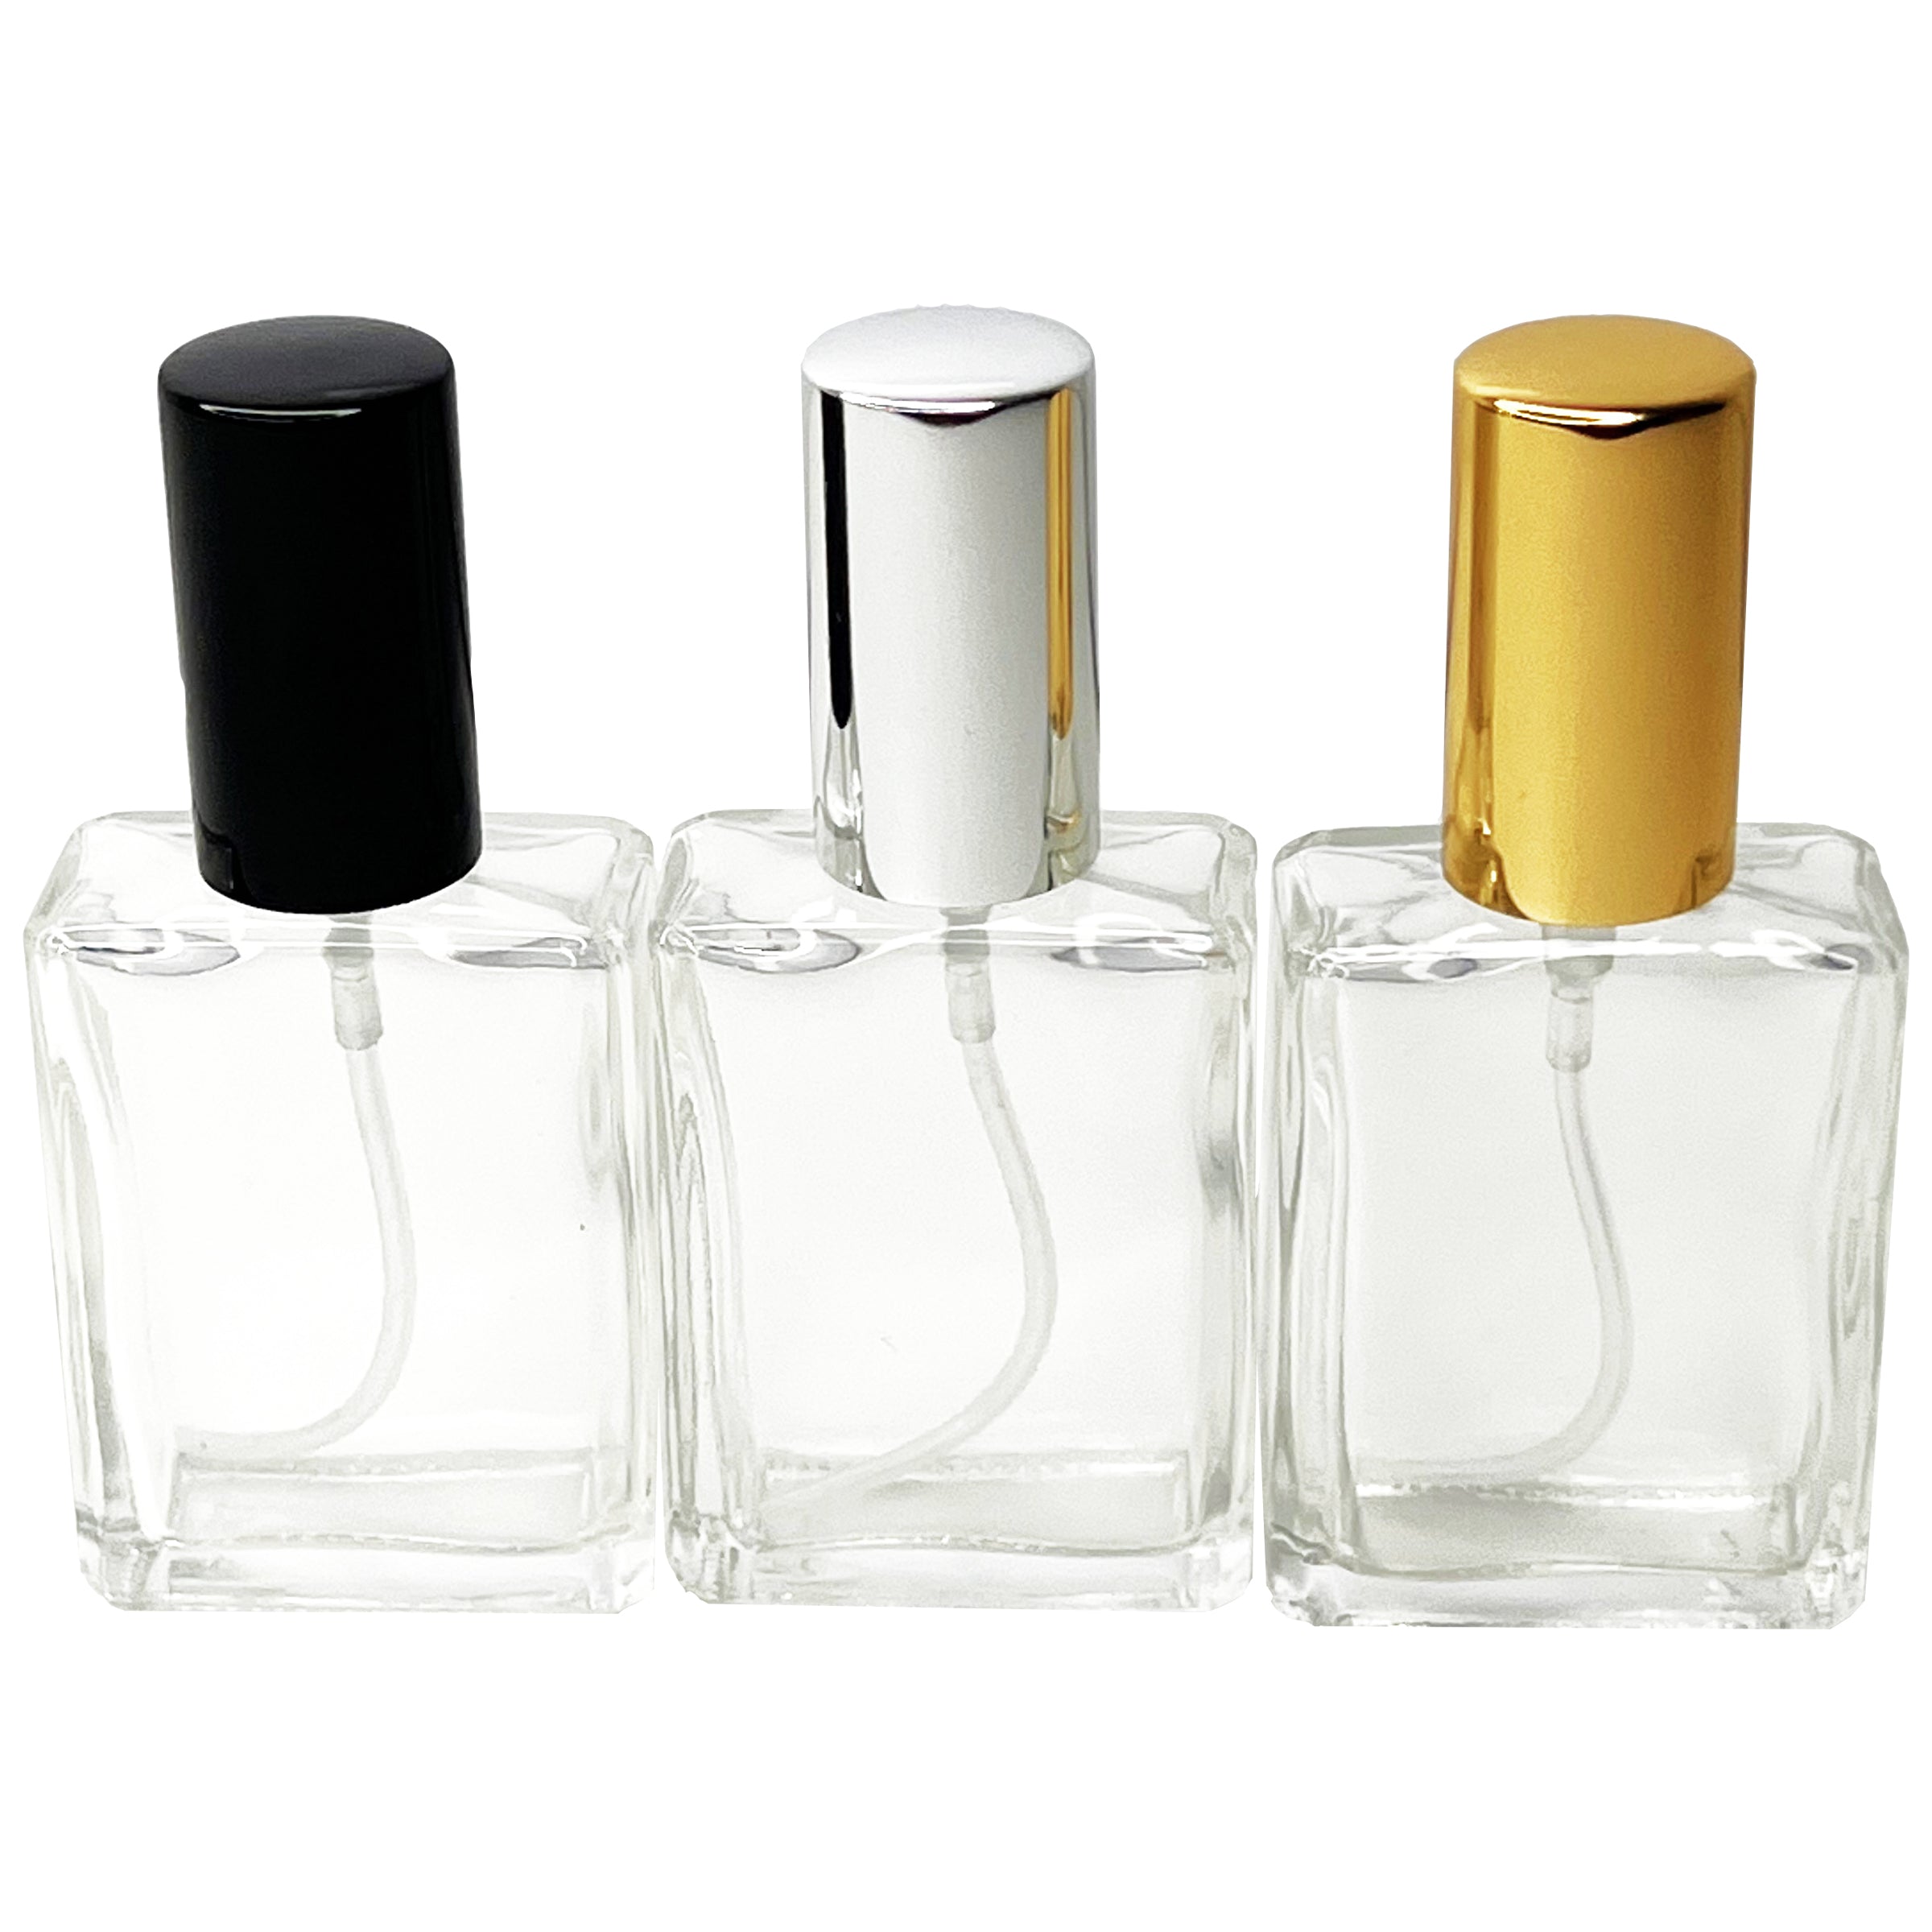 15ml 0.5oz Square Perfume Glass Spray Bottles Atomizers